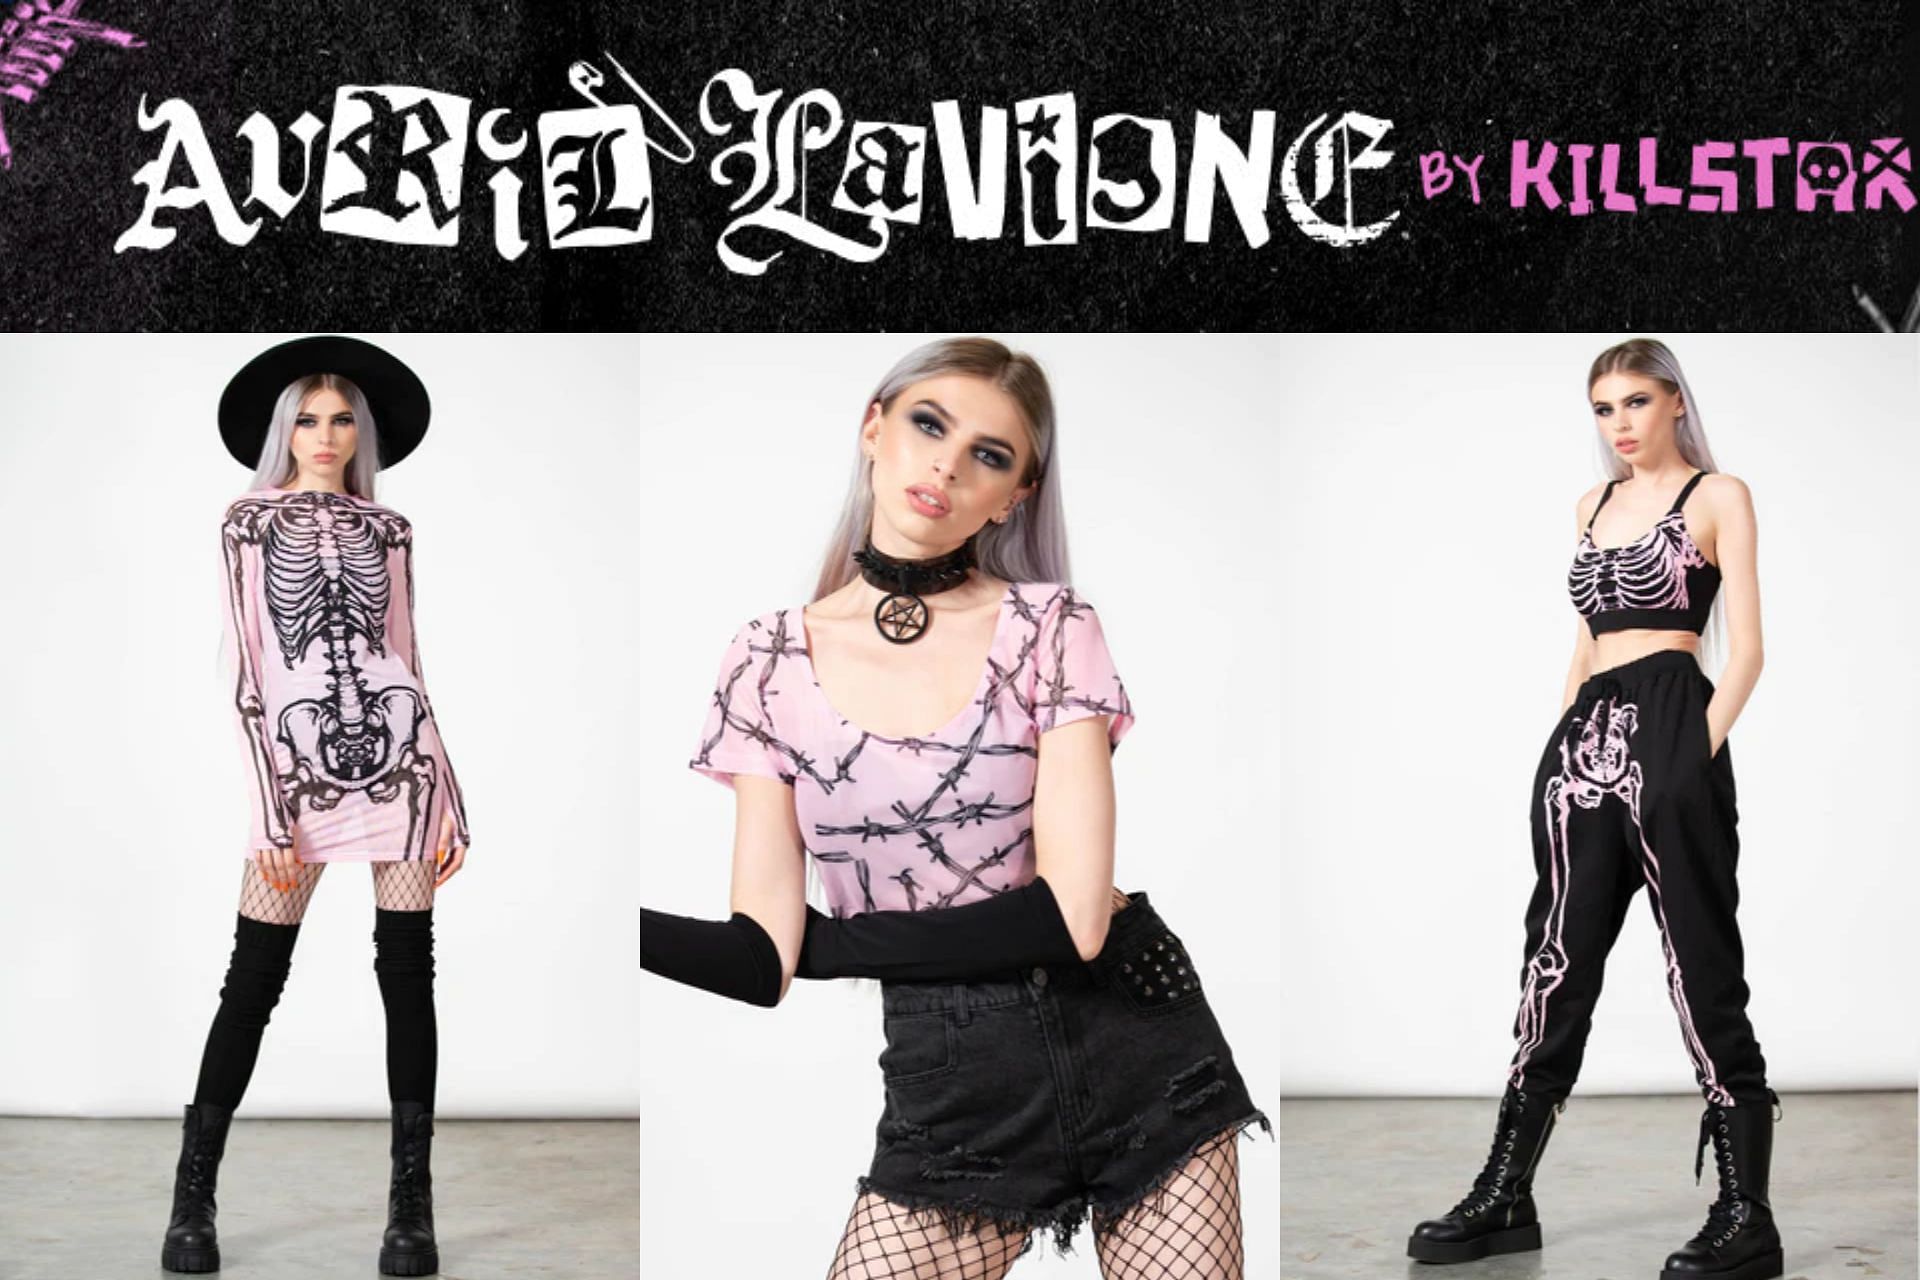 Where to buy Avril Lavigne x Killstar clothing line? Price